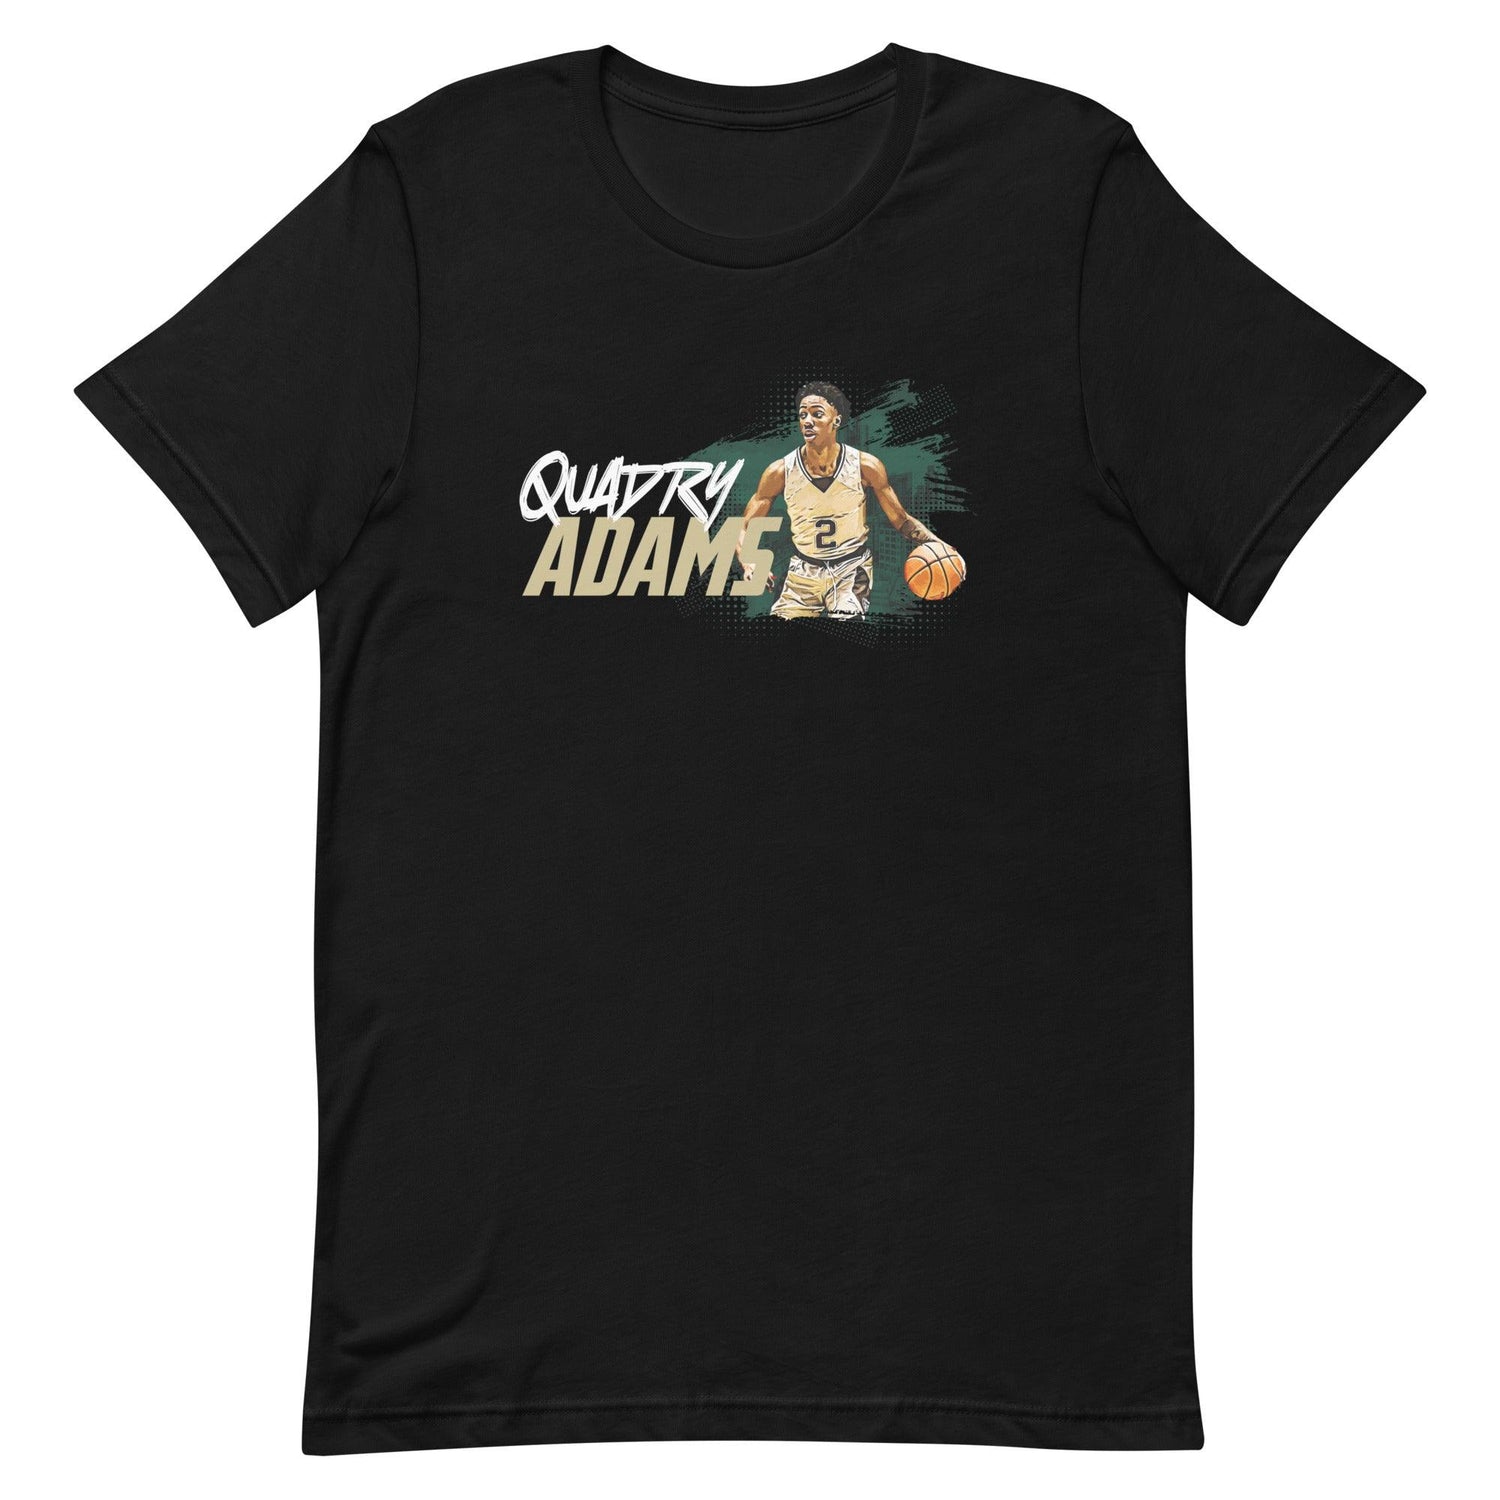 Quadry Adams "Gameday" t-shirt - Fan Arch